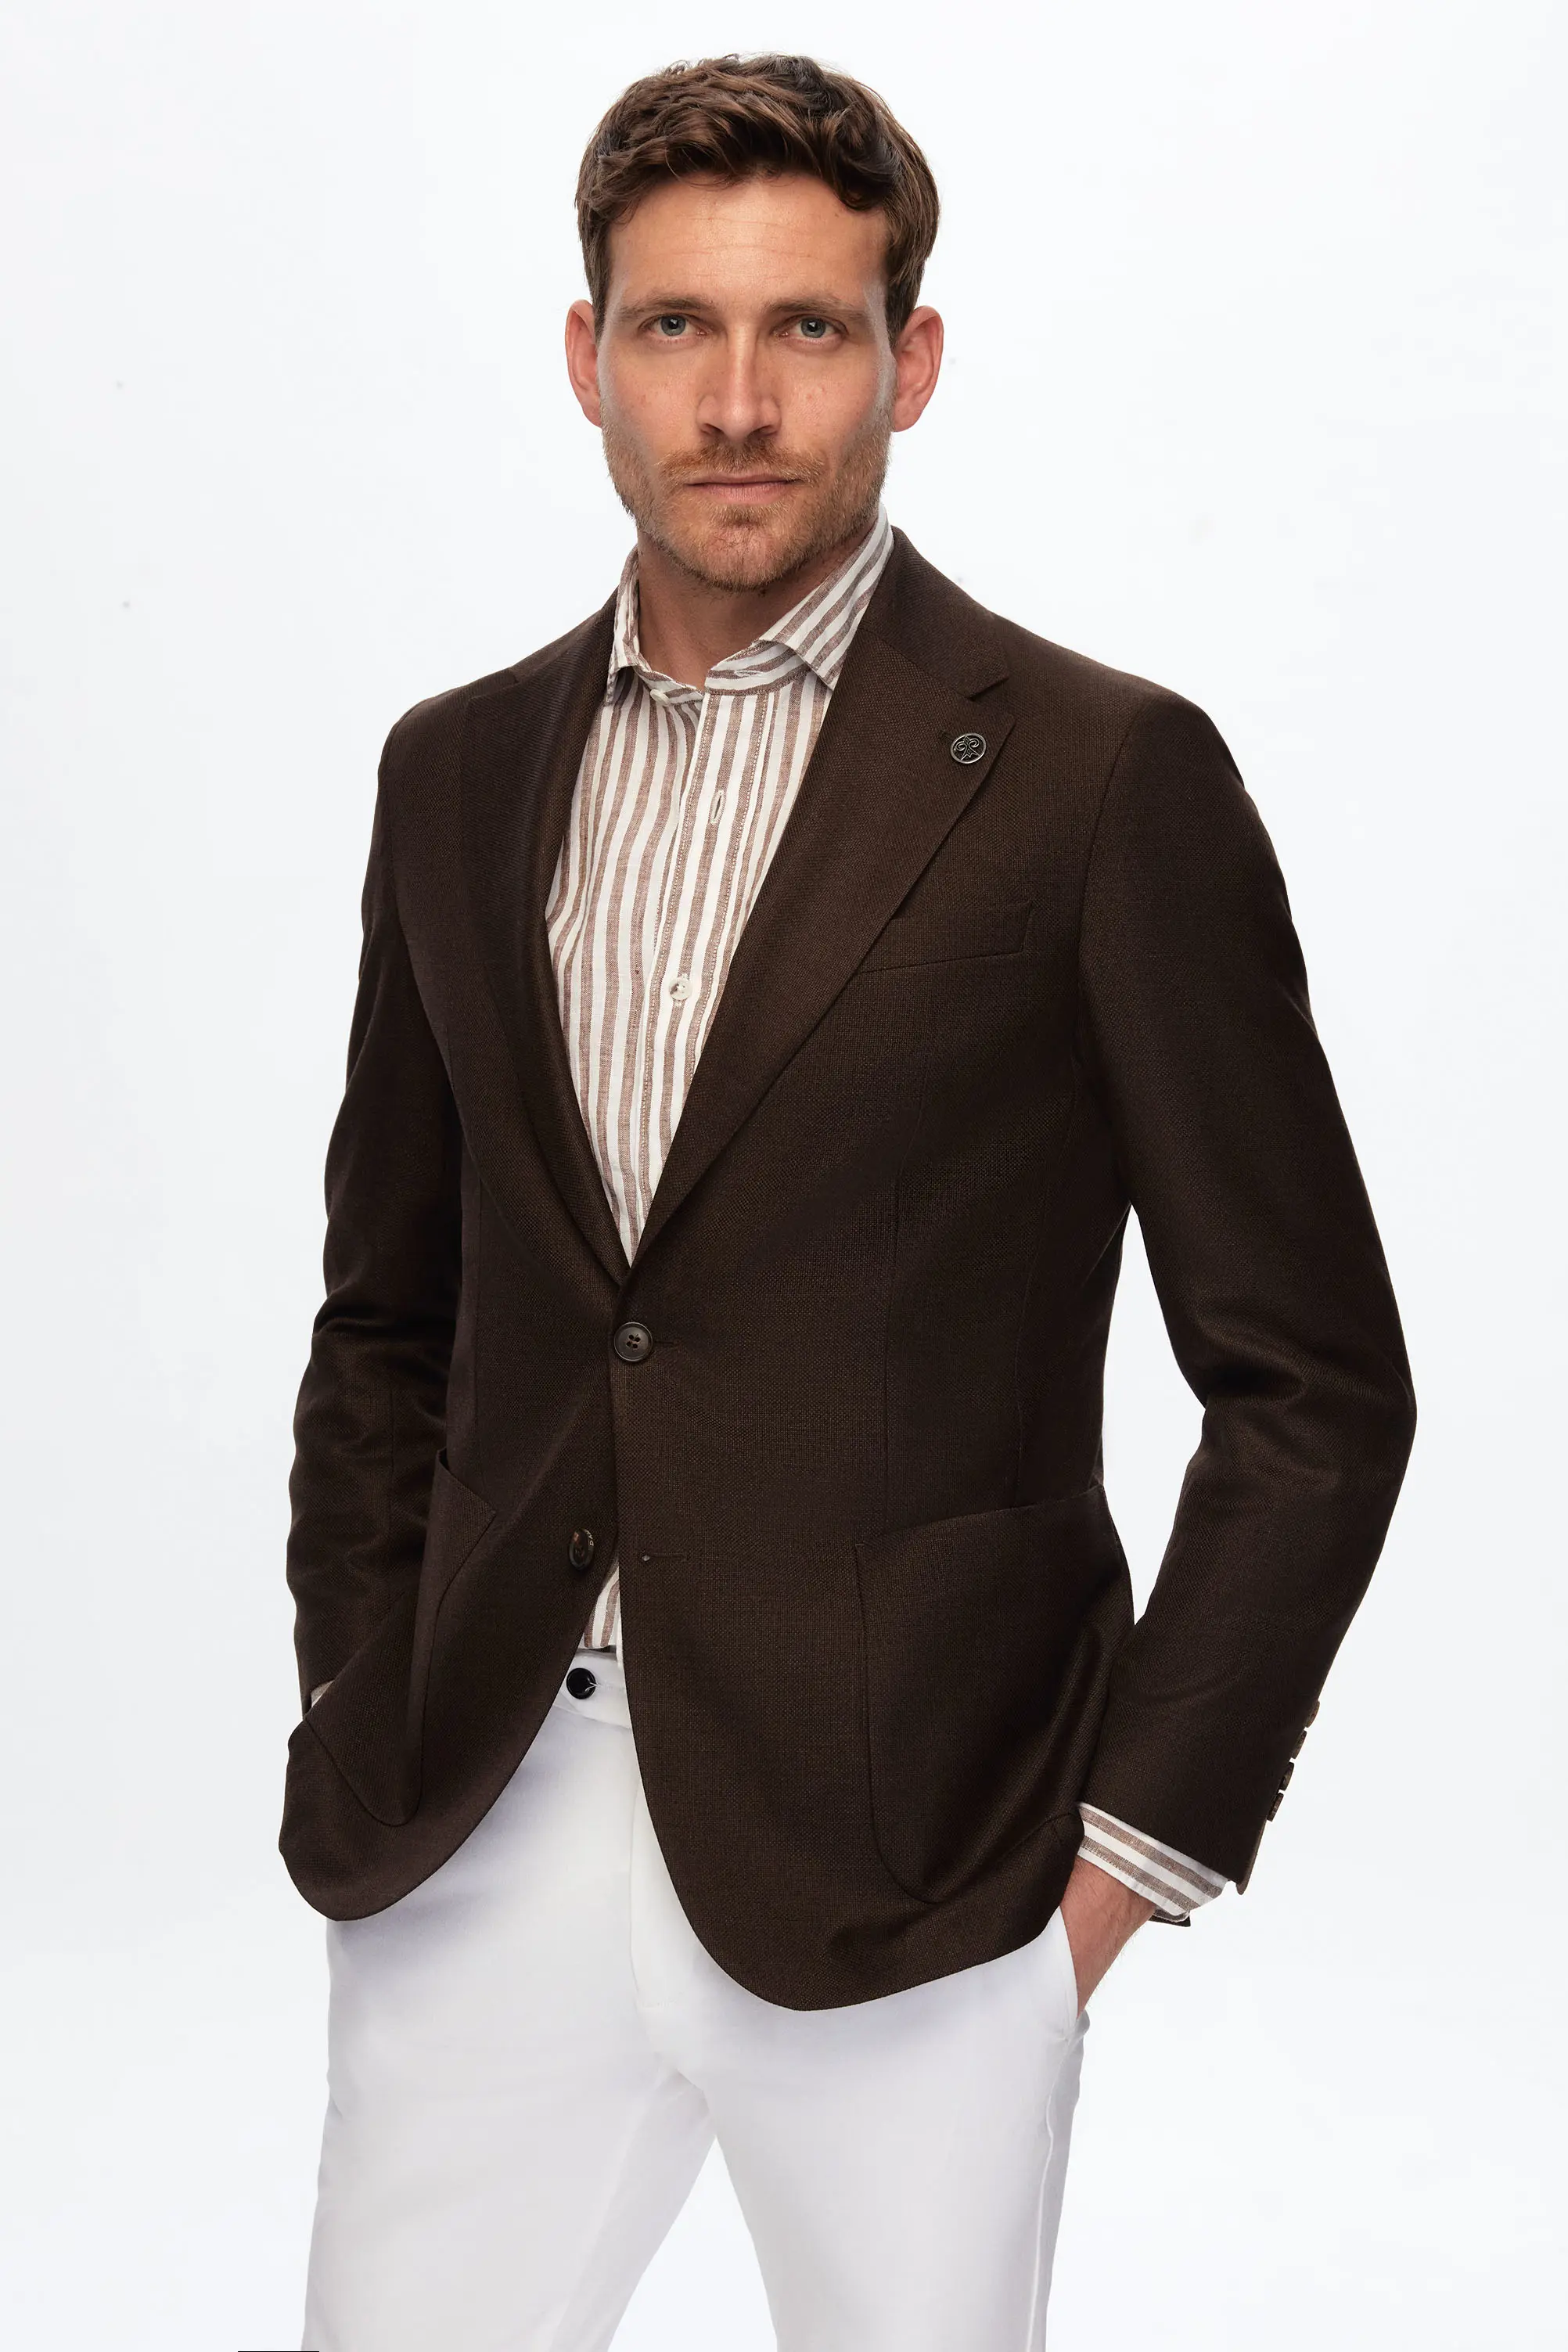 Damat Tween Damat Slim Fit Açık Kahverengi Dokulu Kumaş Ceket. 1